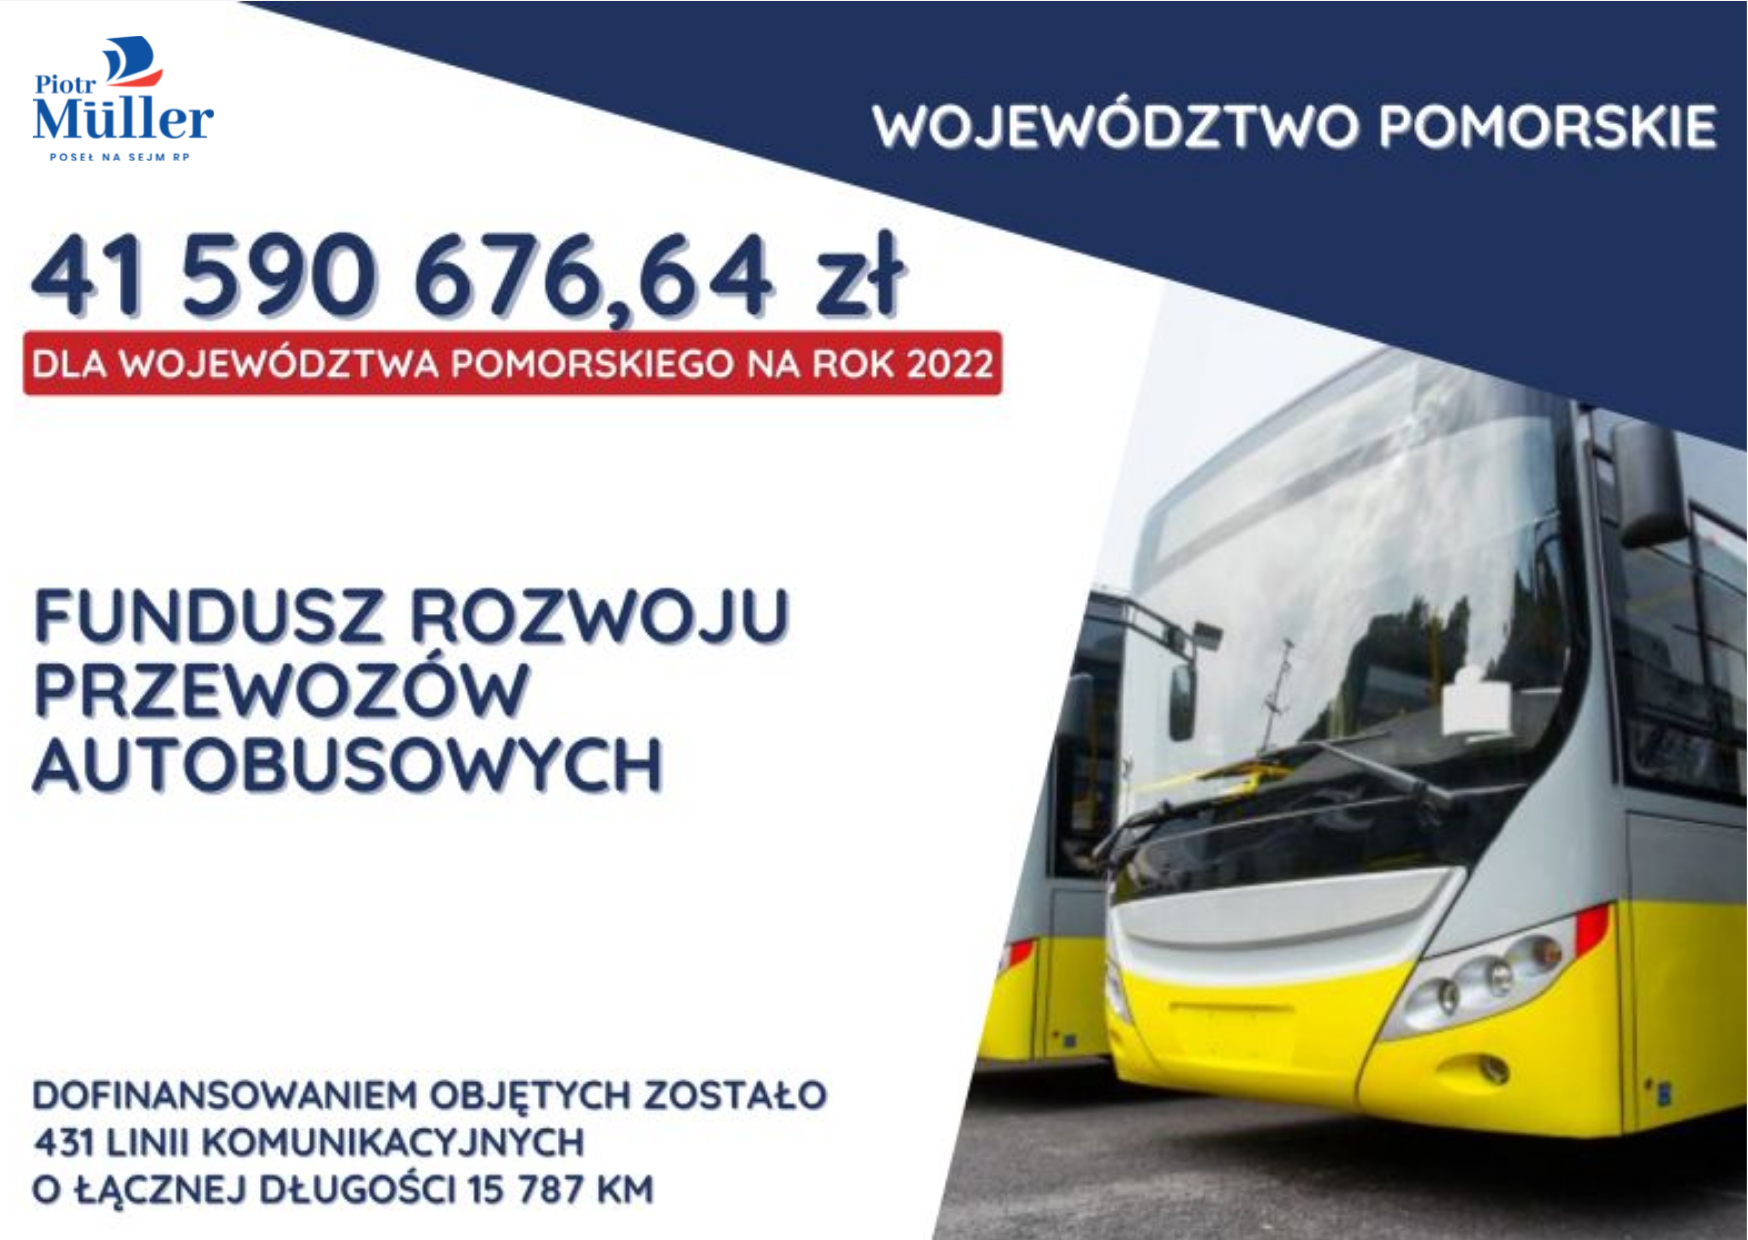 Dodatkowe środki, które 29 grudnia 2021 ogłosił wojewoda pomorski otrzymał:
powiat lęborski, gmina Cewice, powiat bytowski, powiat słupski.